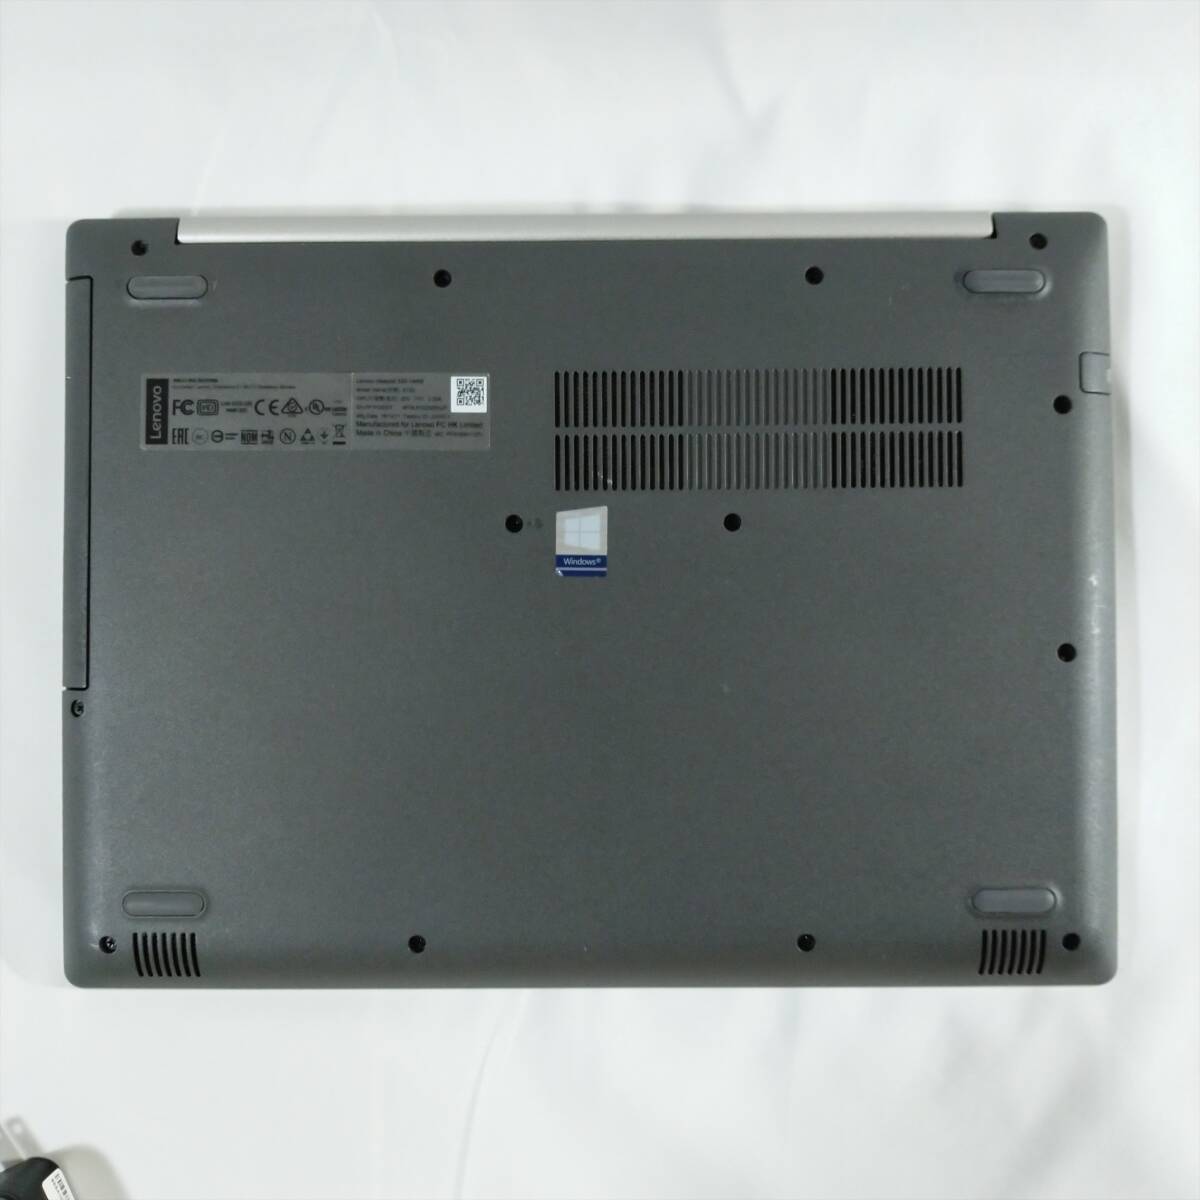 レノボ IdeaPad 330-14IKB ノートパソコン i5-8250U DDR4 12GB SSD 512GB Office